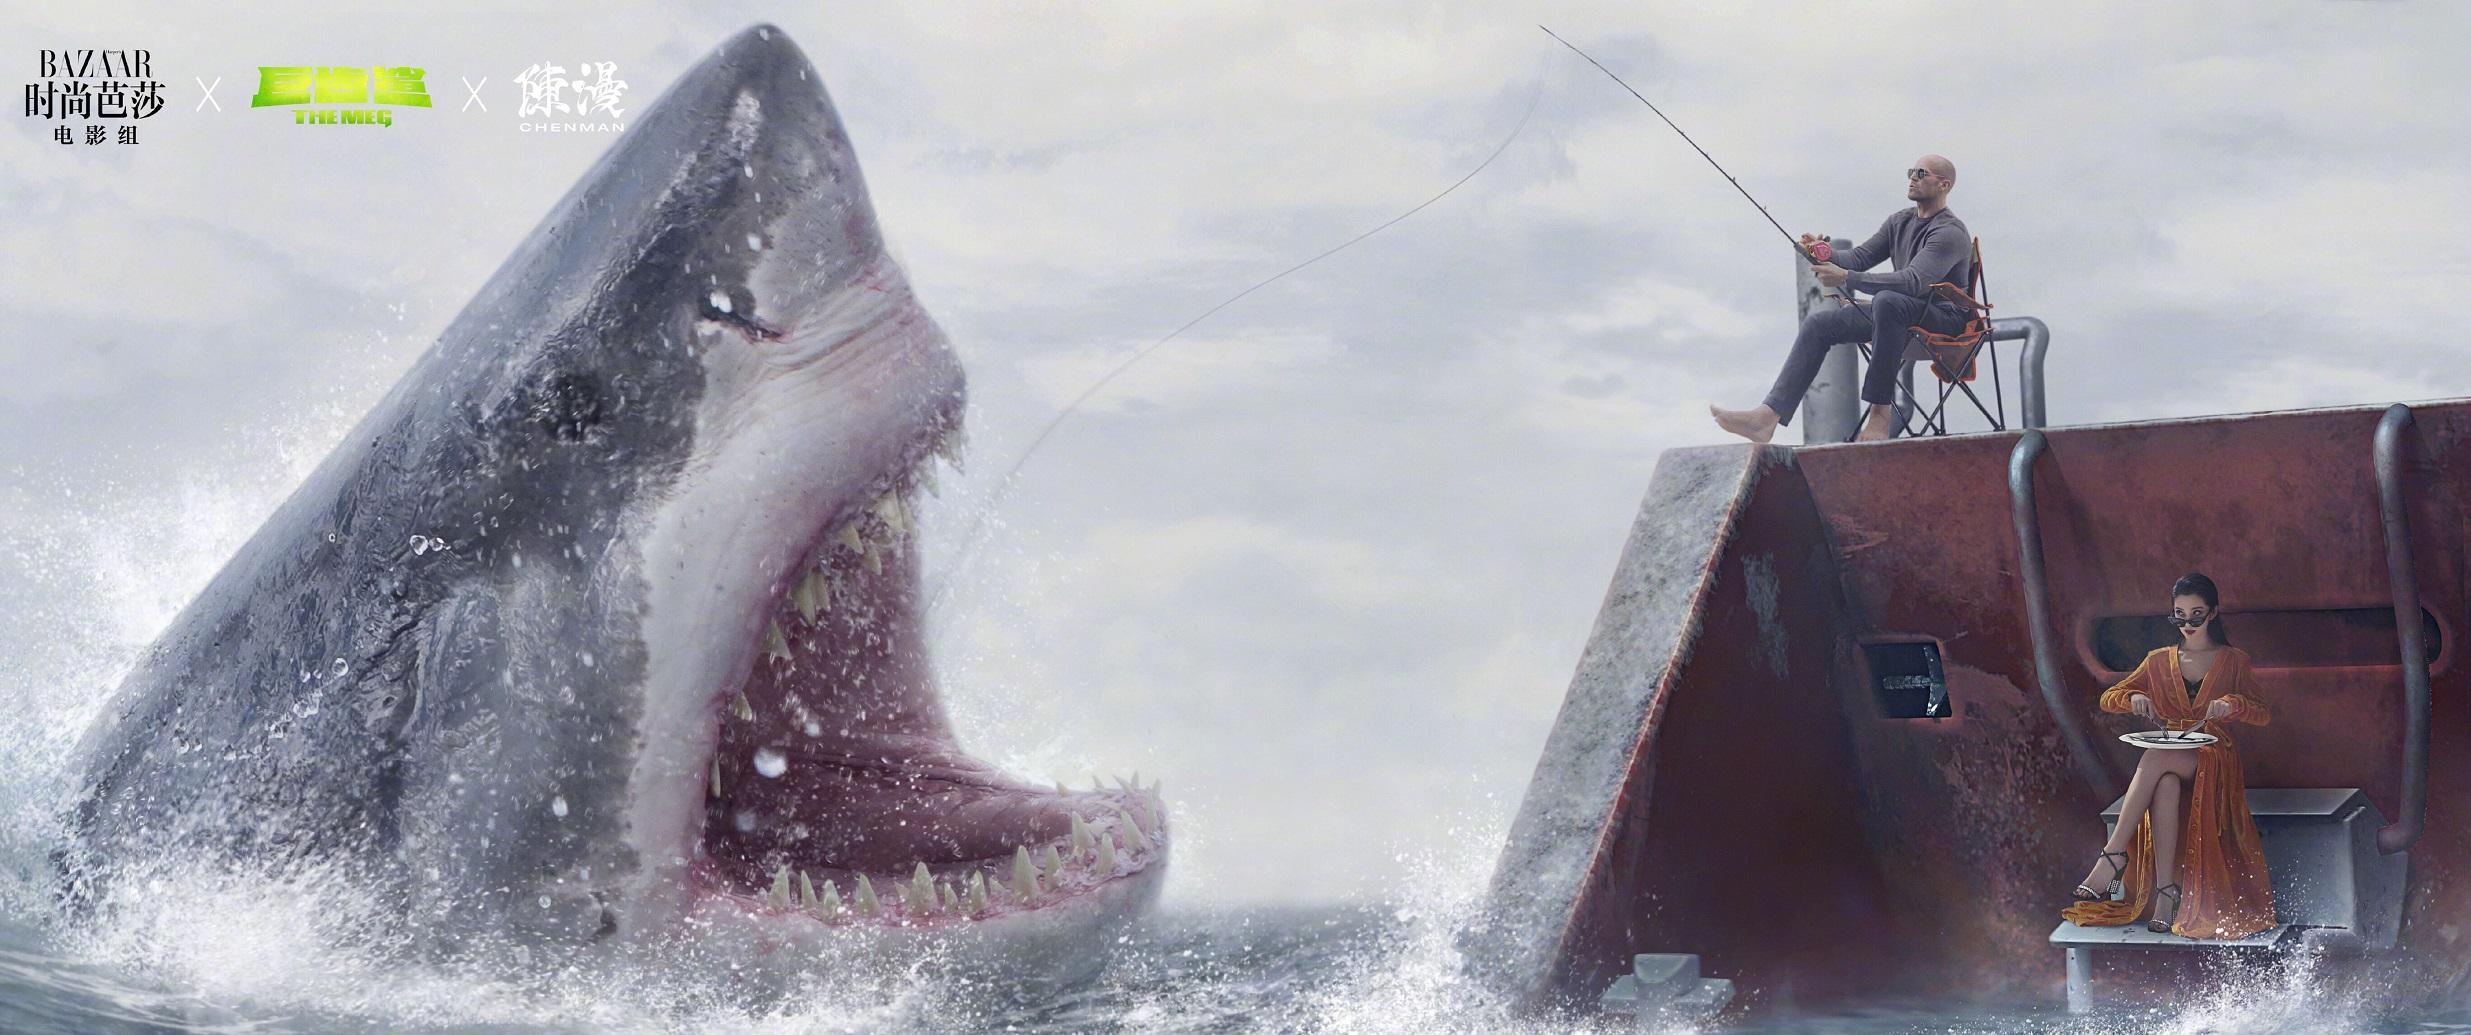 巨齿鲨生猛海鲜想起了当年被史前巨兽支配的恐惧